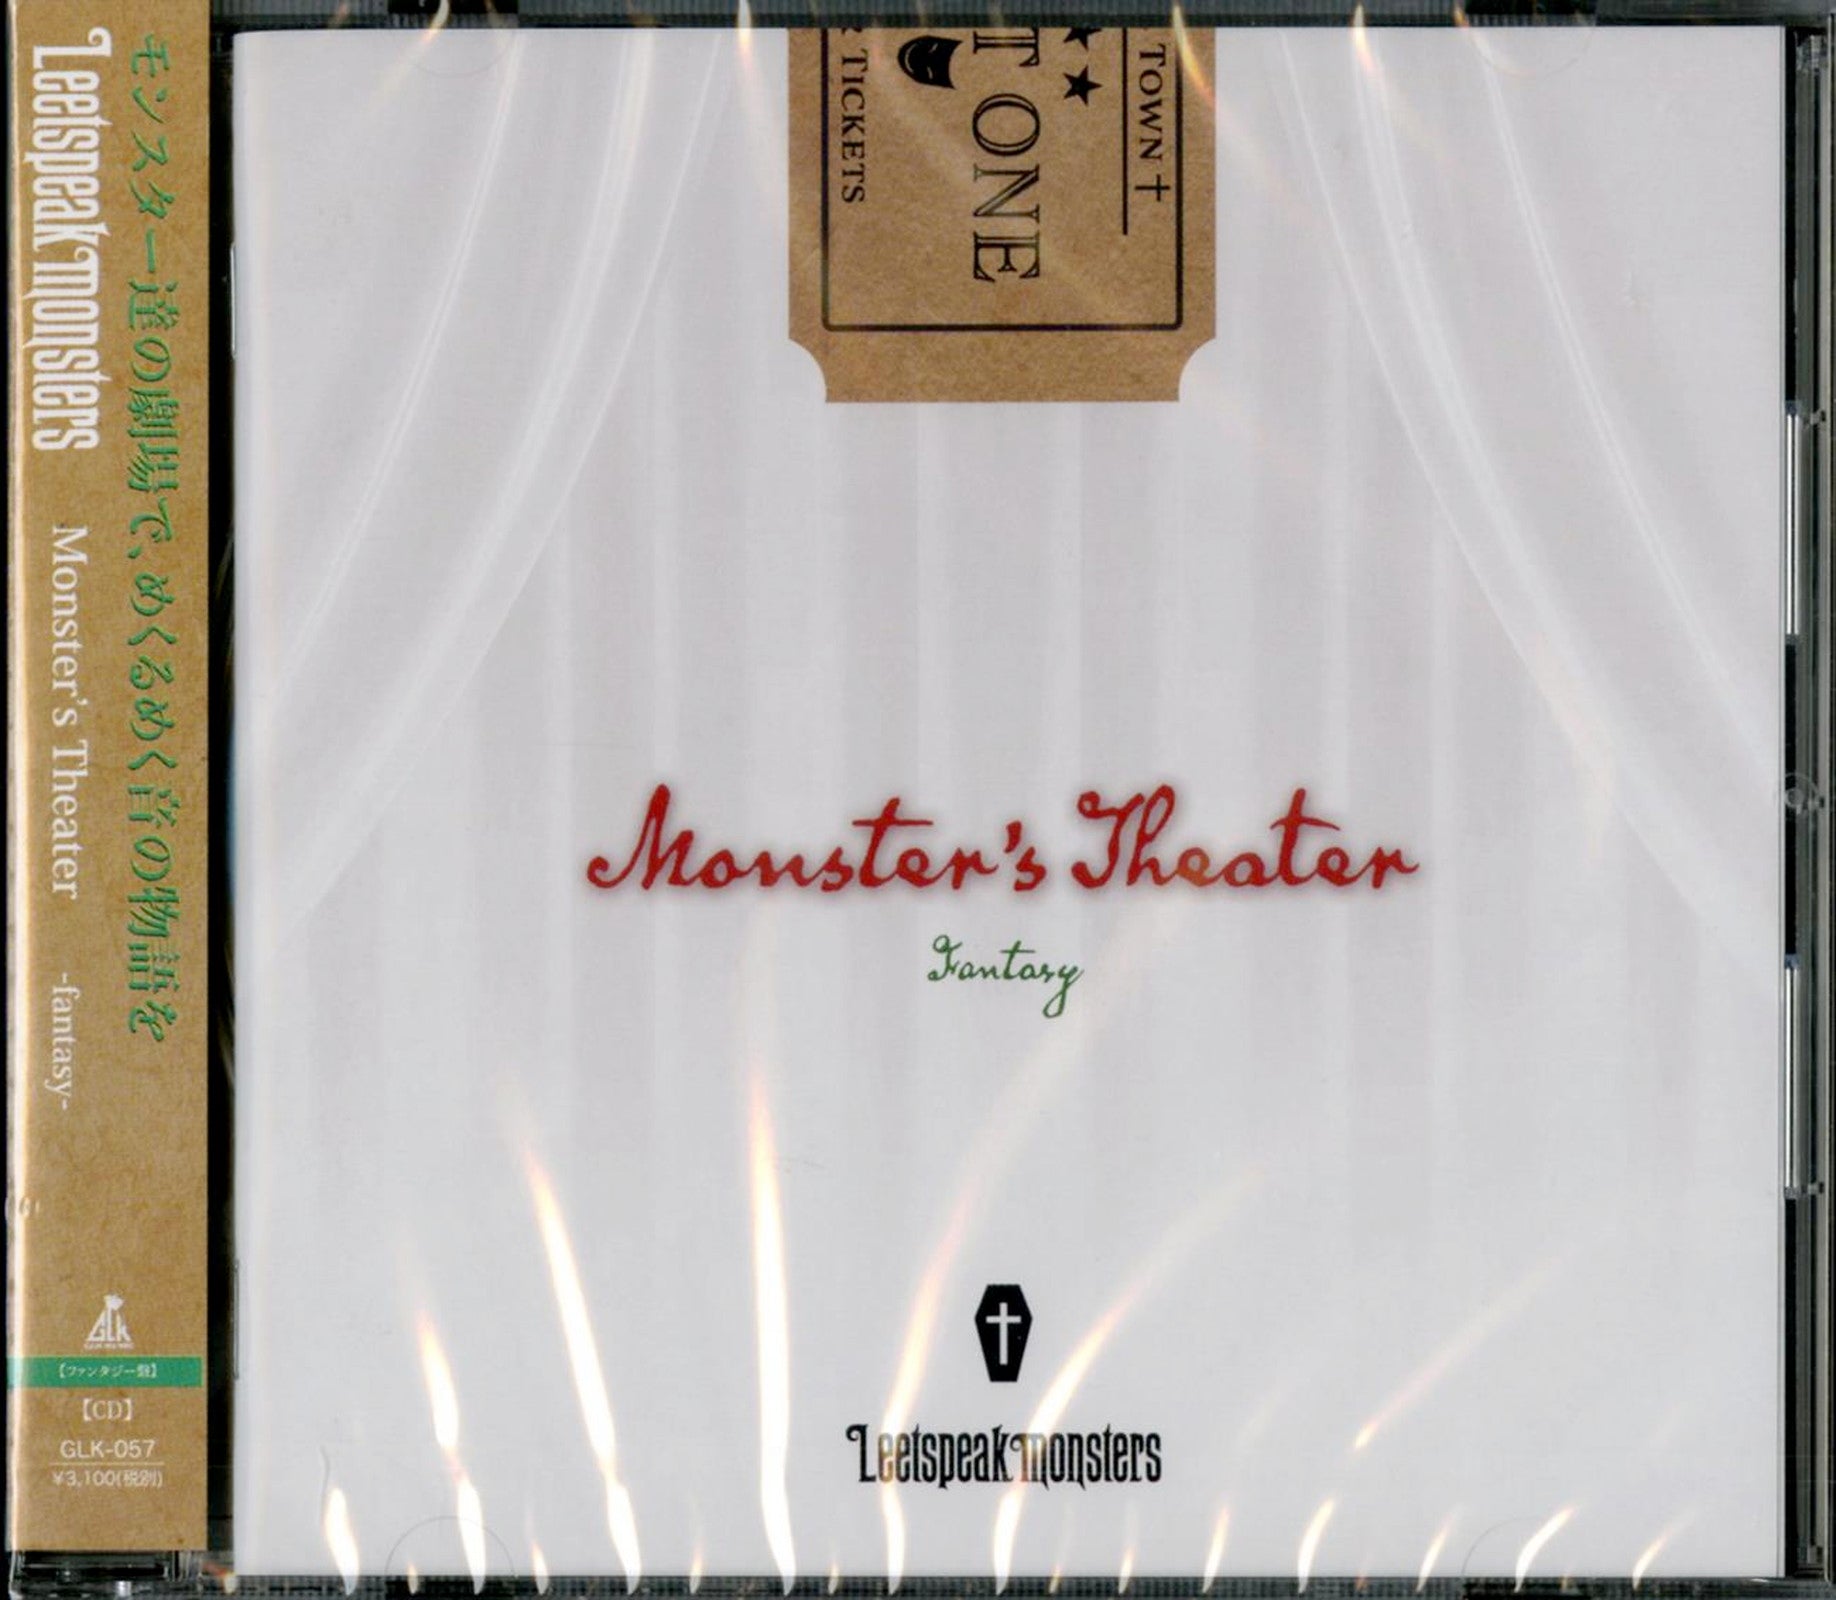 Leetspeak Monsters - Monster'S Theater (Fantasy Edition) - Japan 